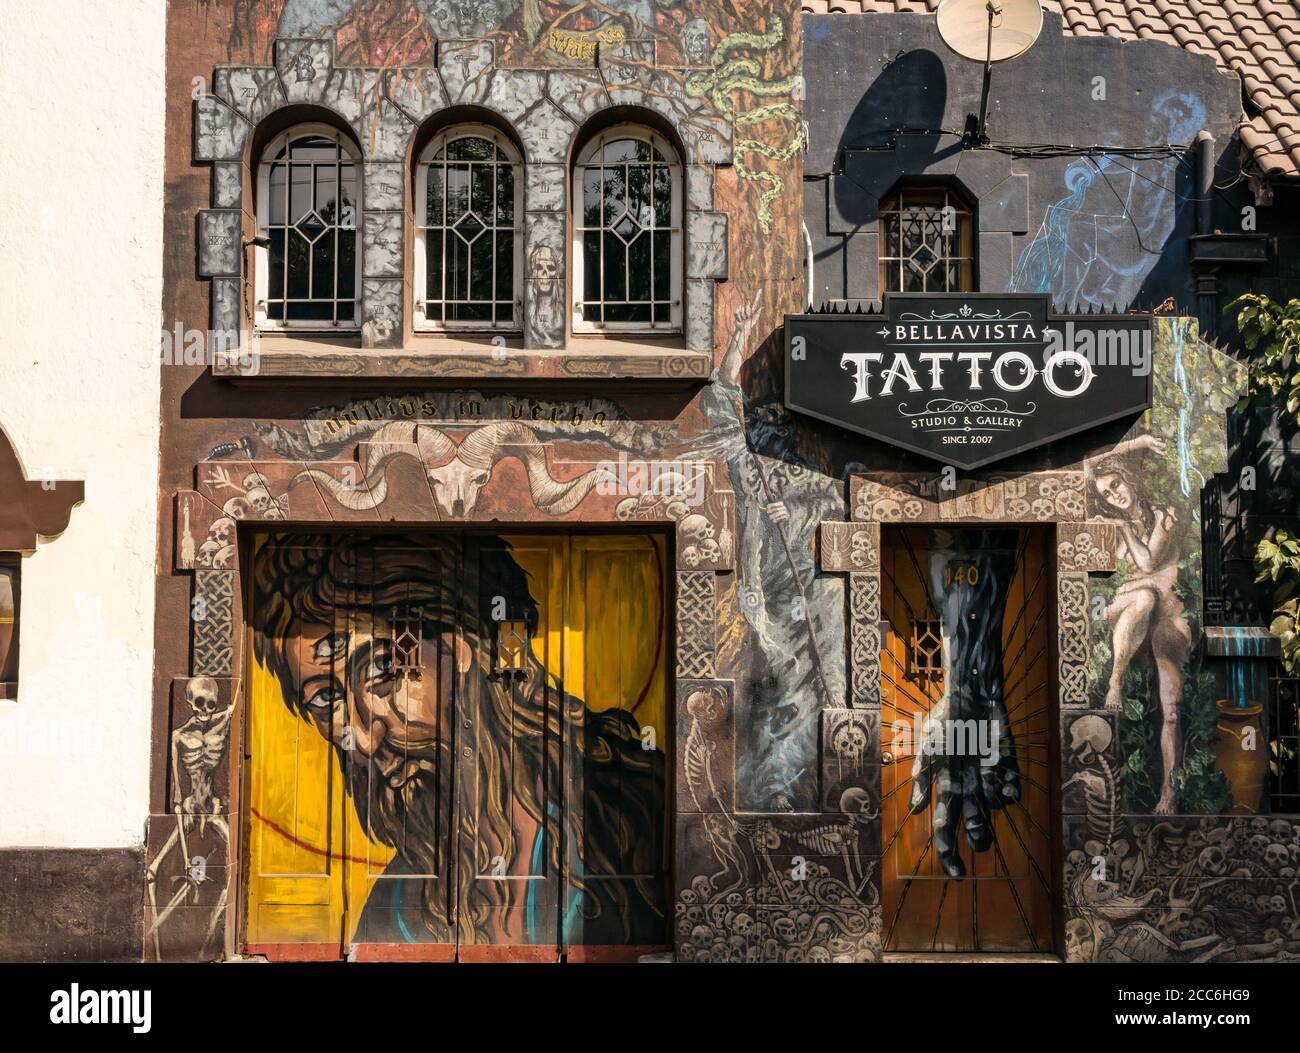 Opere d'arte stravaganti di fronte al Tattoo Parlour Studio, Bellavista, Santiago, Cile, Sud America Foto Stock